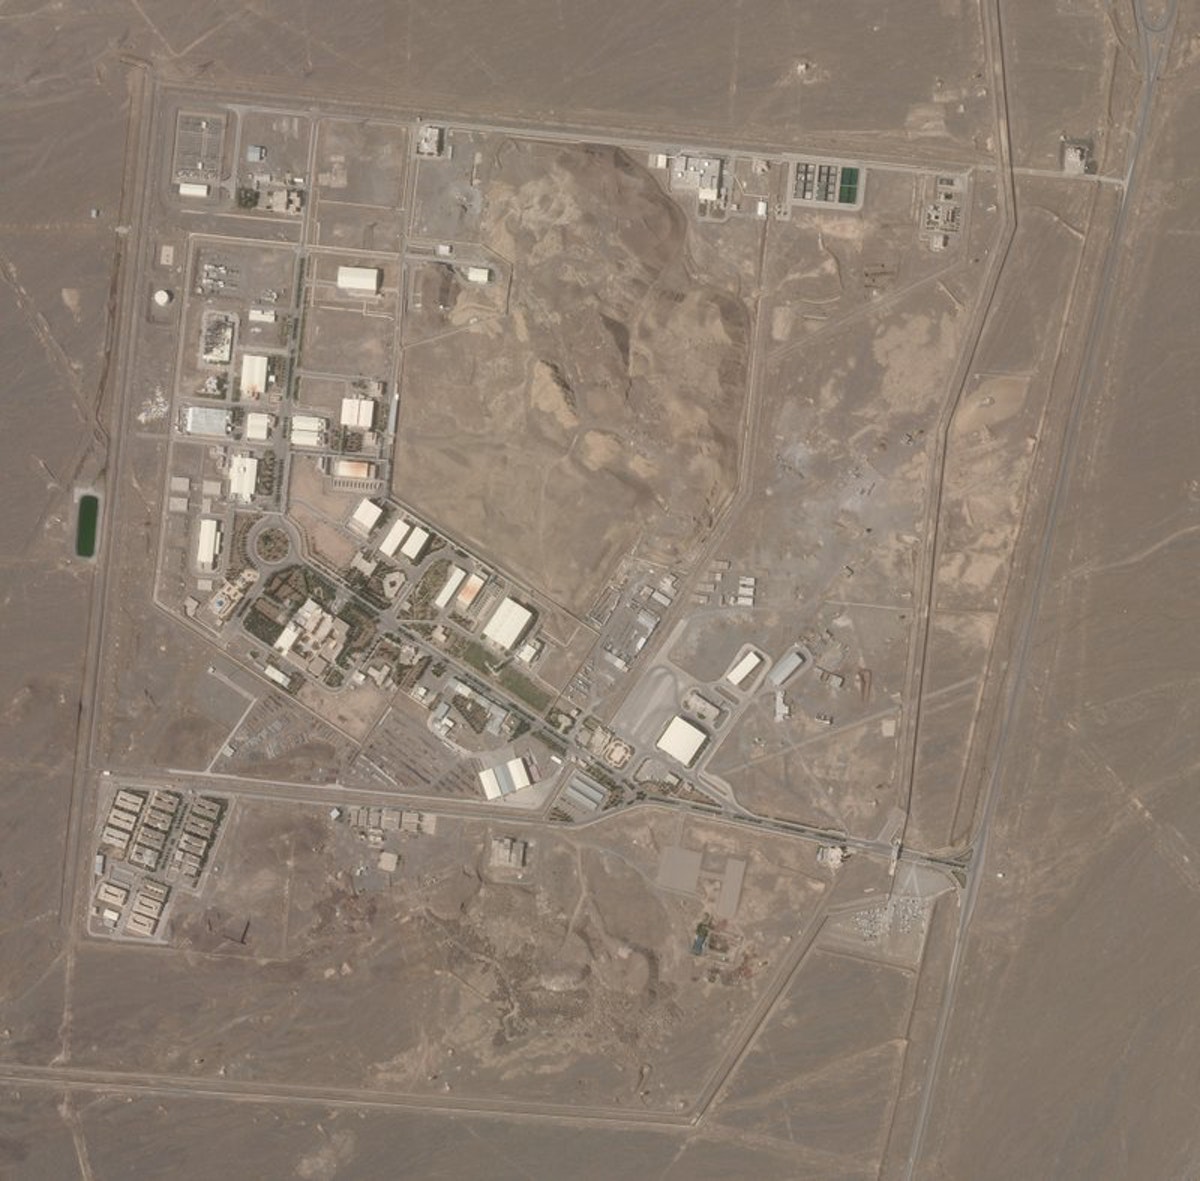 صورة بالقمر الصناعي من شركة "بلانيت لابز" تظهر منشأة نطنز النووية الإيرانية - 7 أبريل 2021 - AP